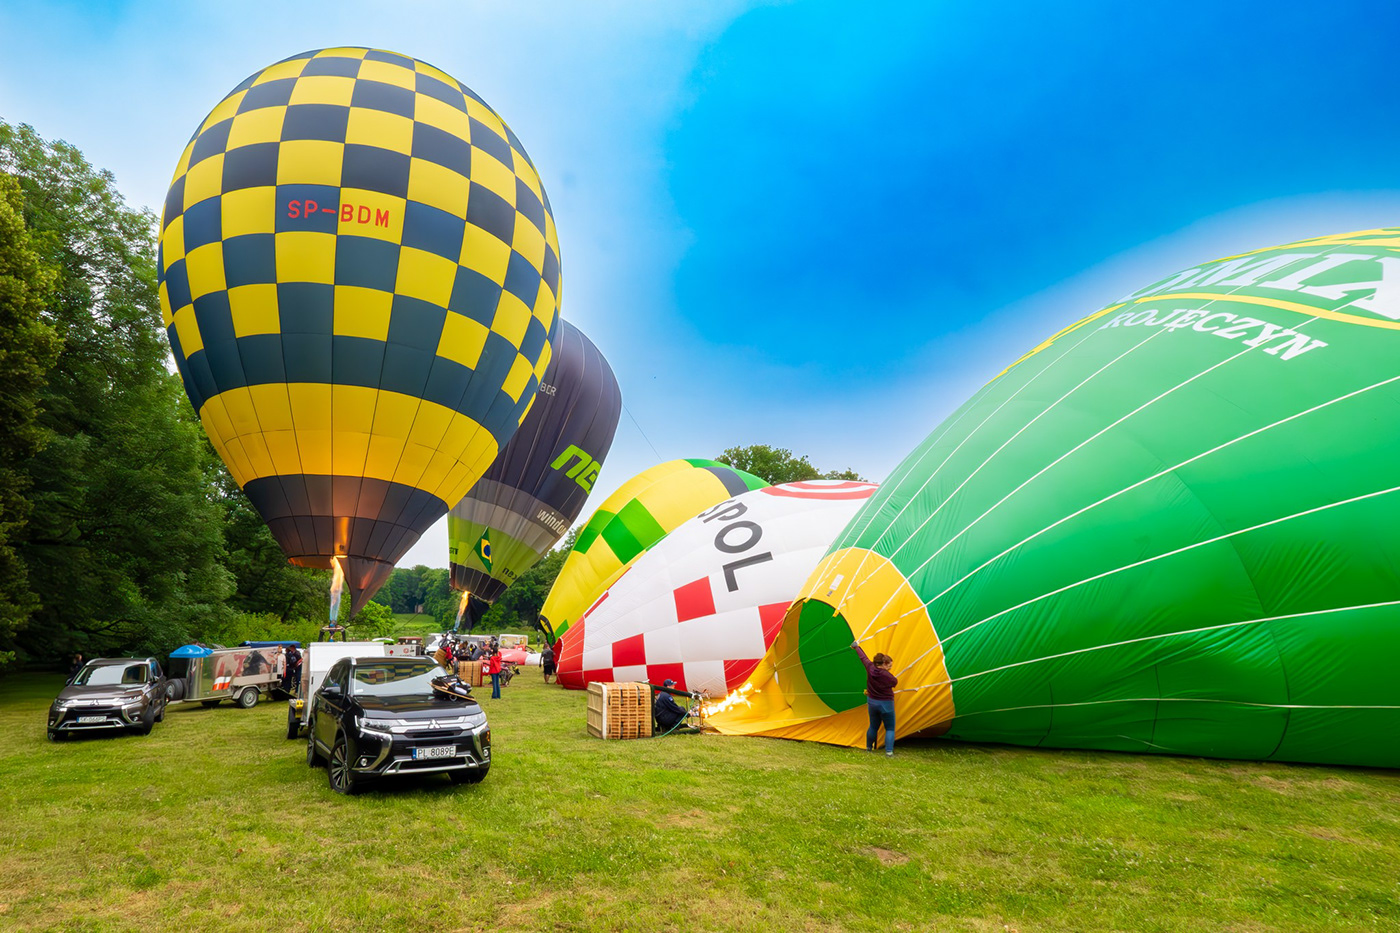 SKY Photography  om1 olympus Landscape baloons flight Pszczyna